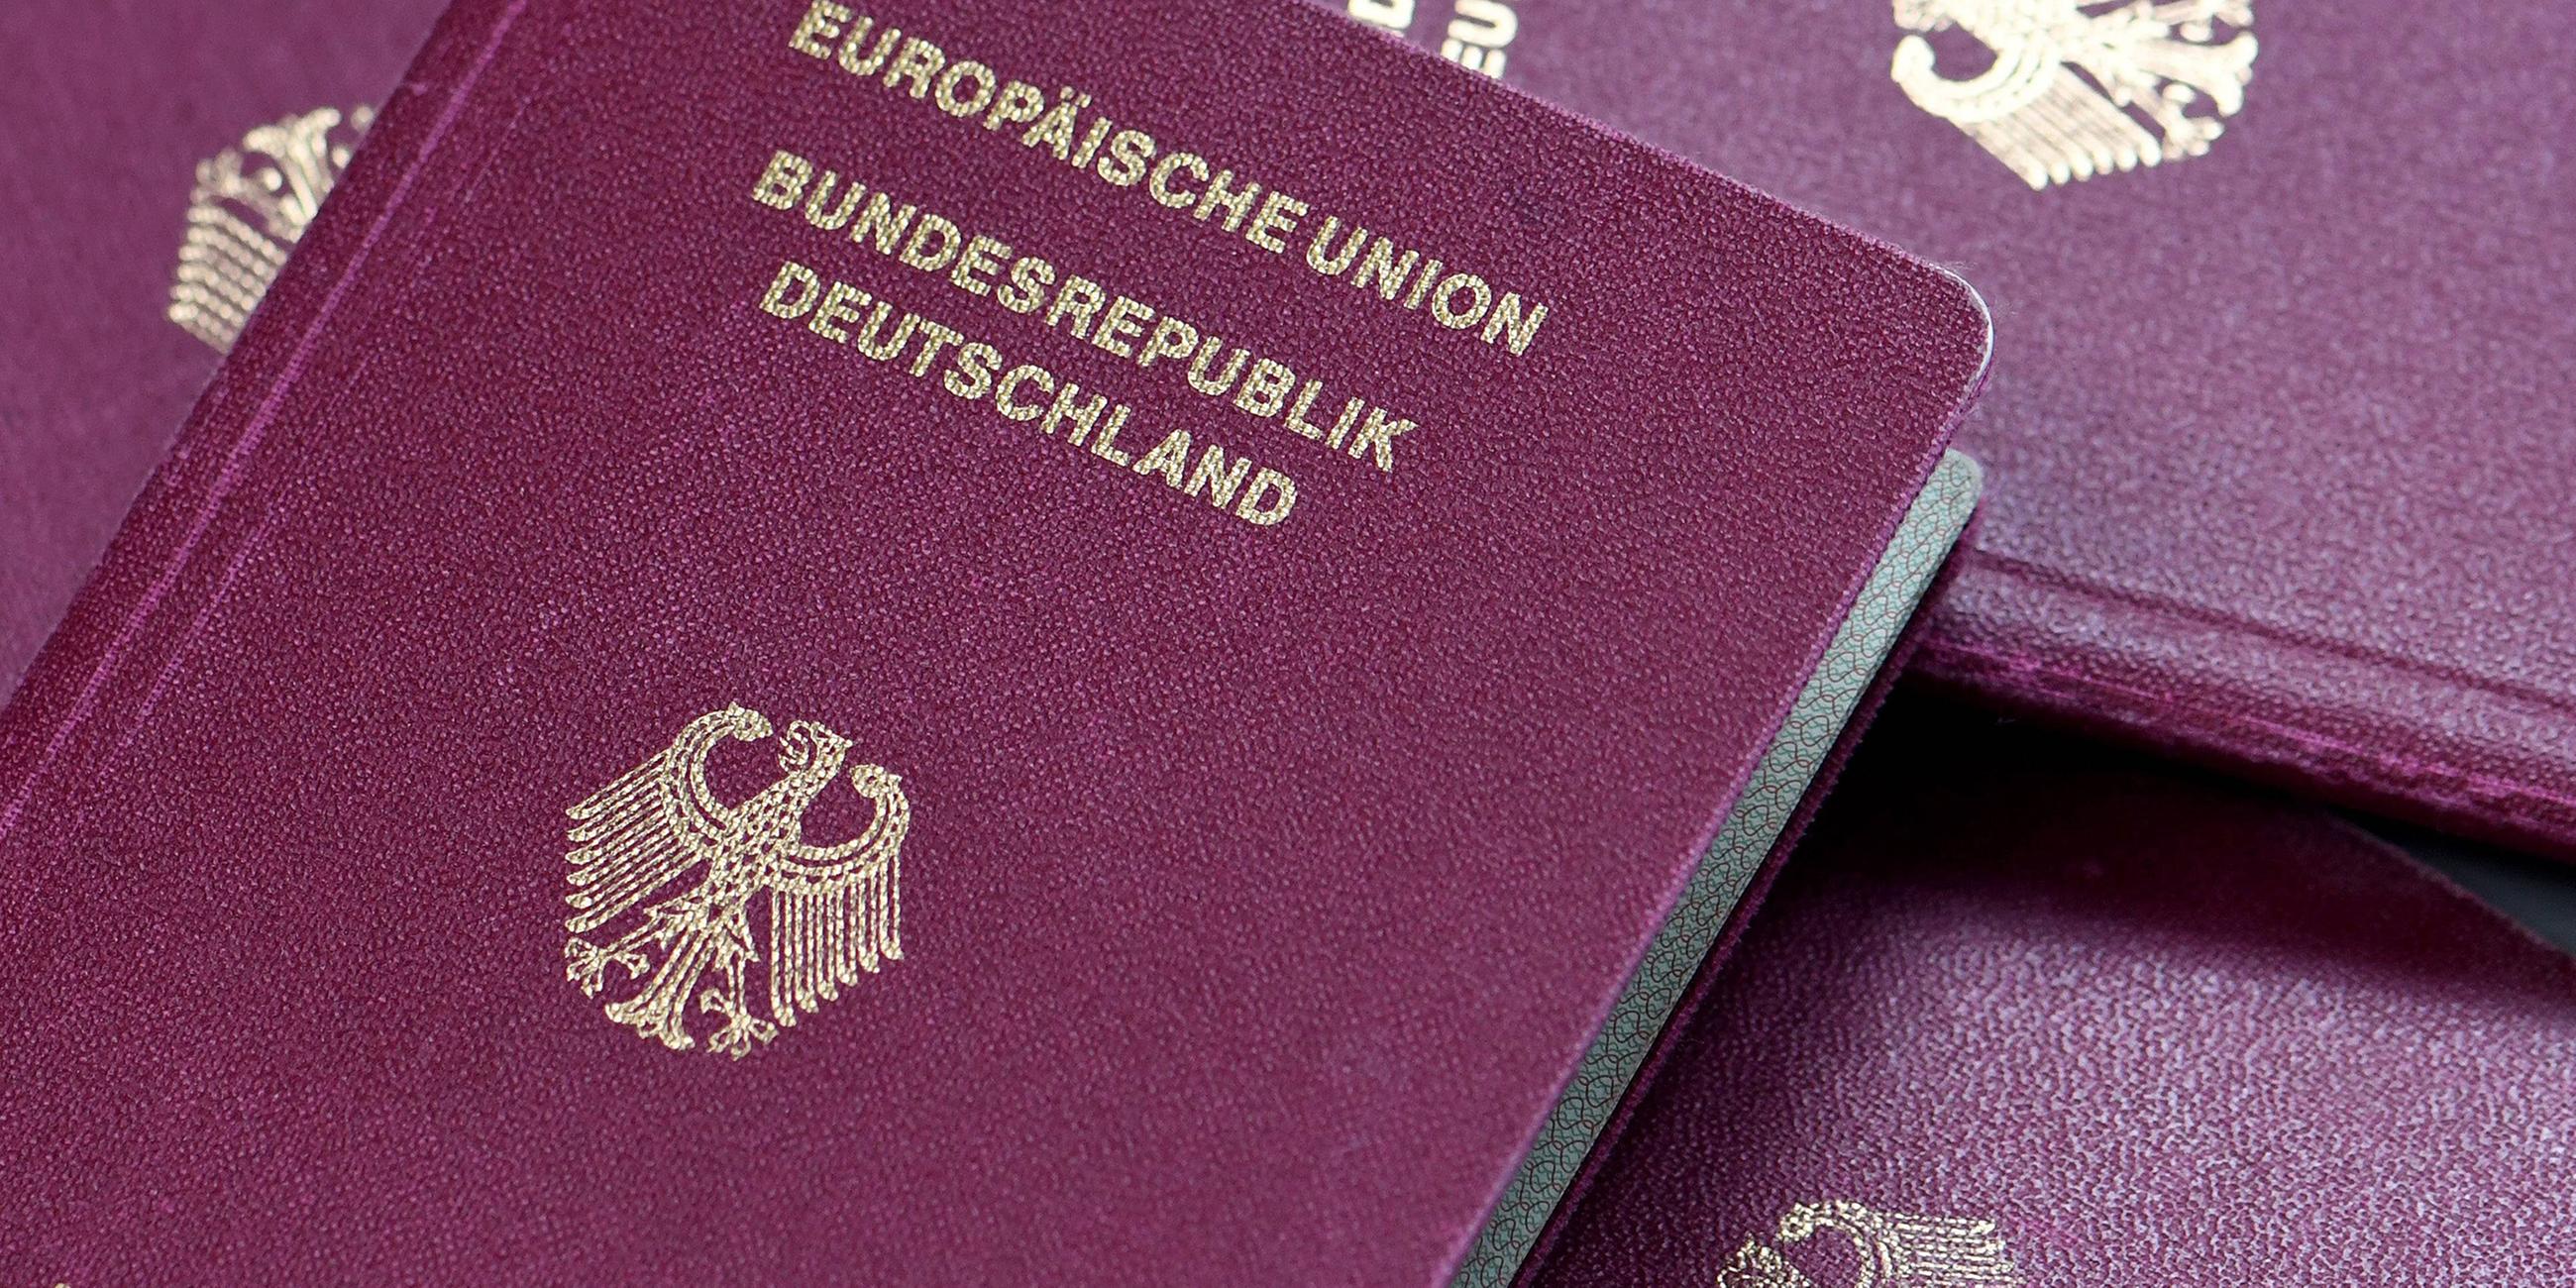 Deutsche Reisepaesse liegen auf einem Stapel